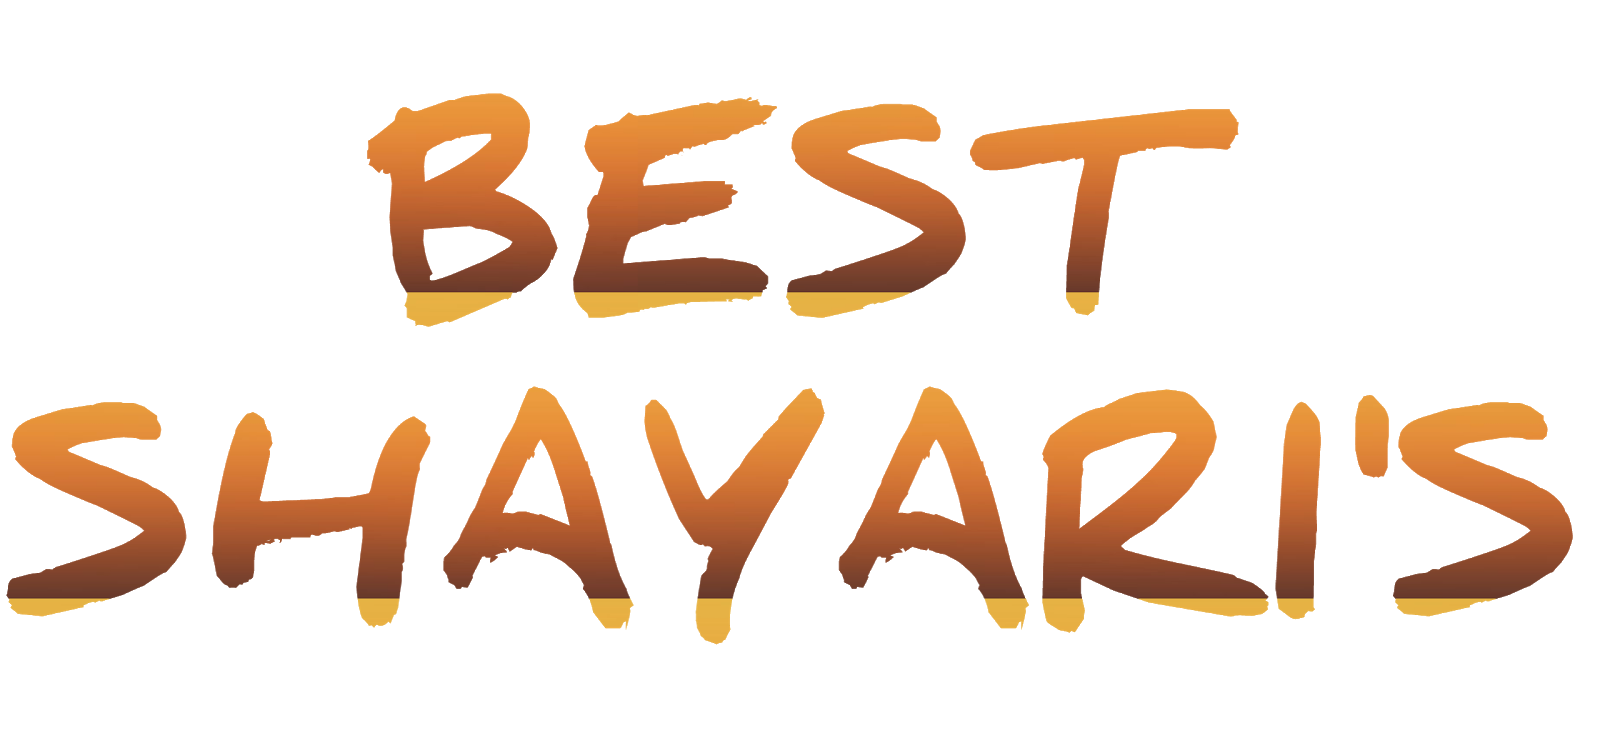 Best Shayari's 